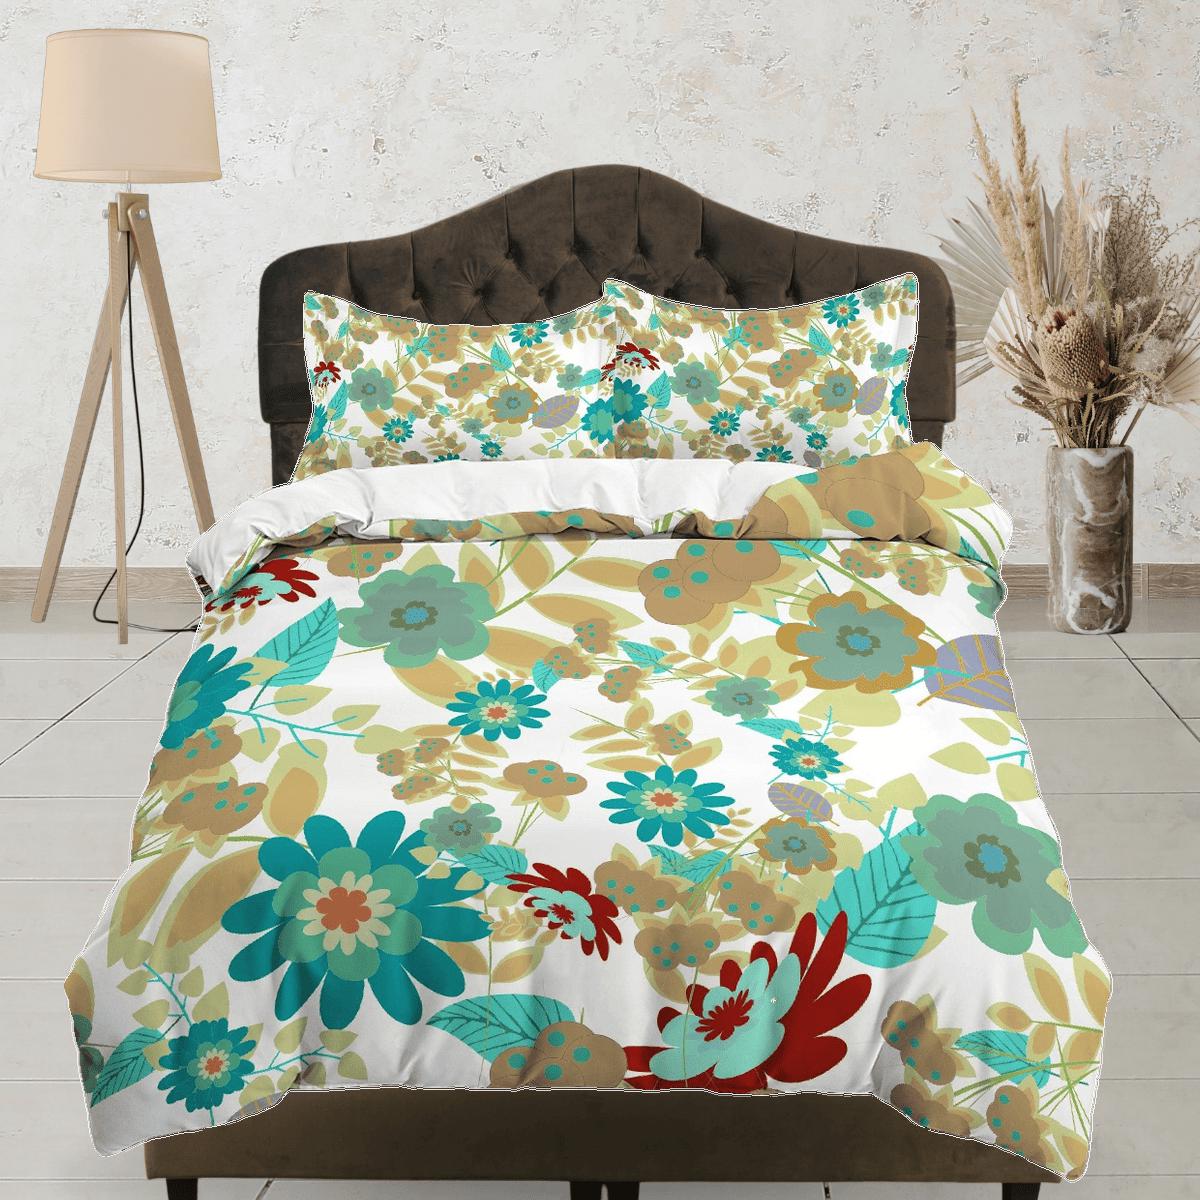 daintyduvet Mid century modern green floral bedding, aesthetic duvet cover queen, king, boho duvet, designer full size bedding maximalist 70s nostalgia